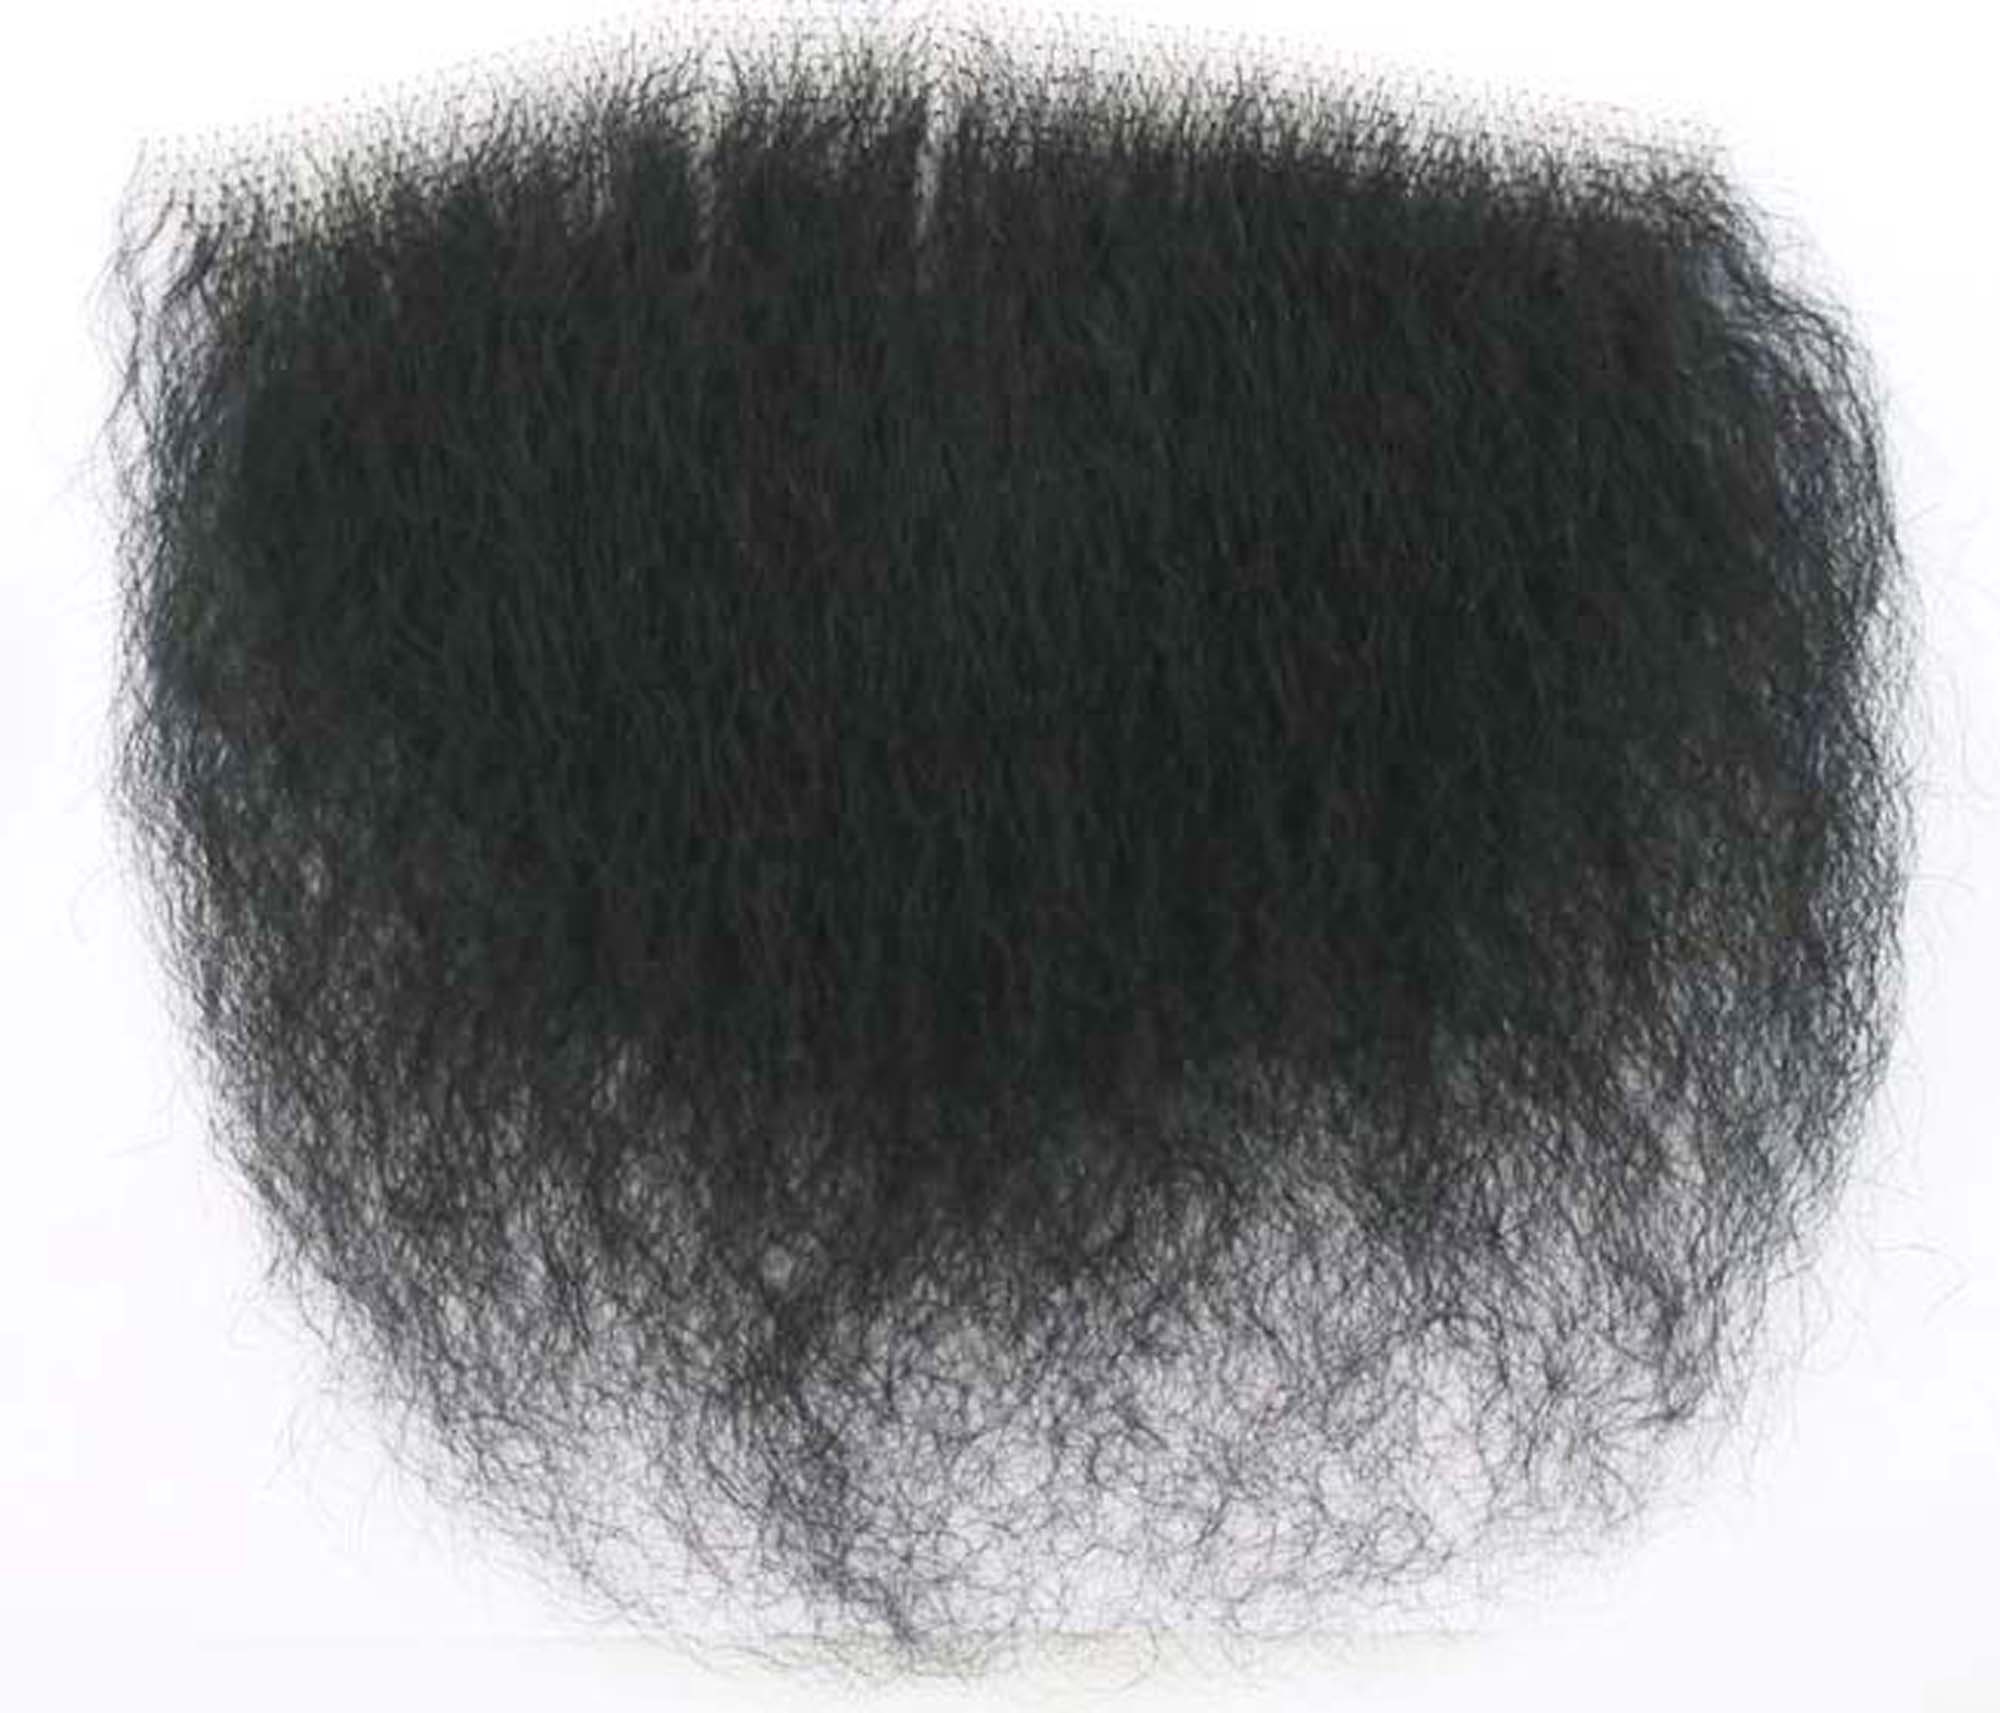  ZM hair female merkin pubic wig facial hair big size real human  hair fake pubic hair toupee